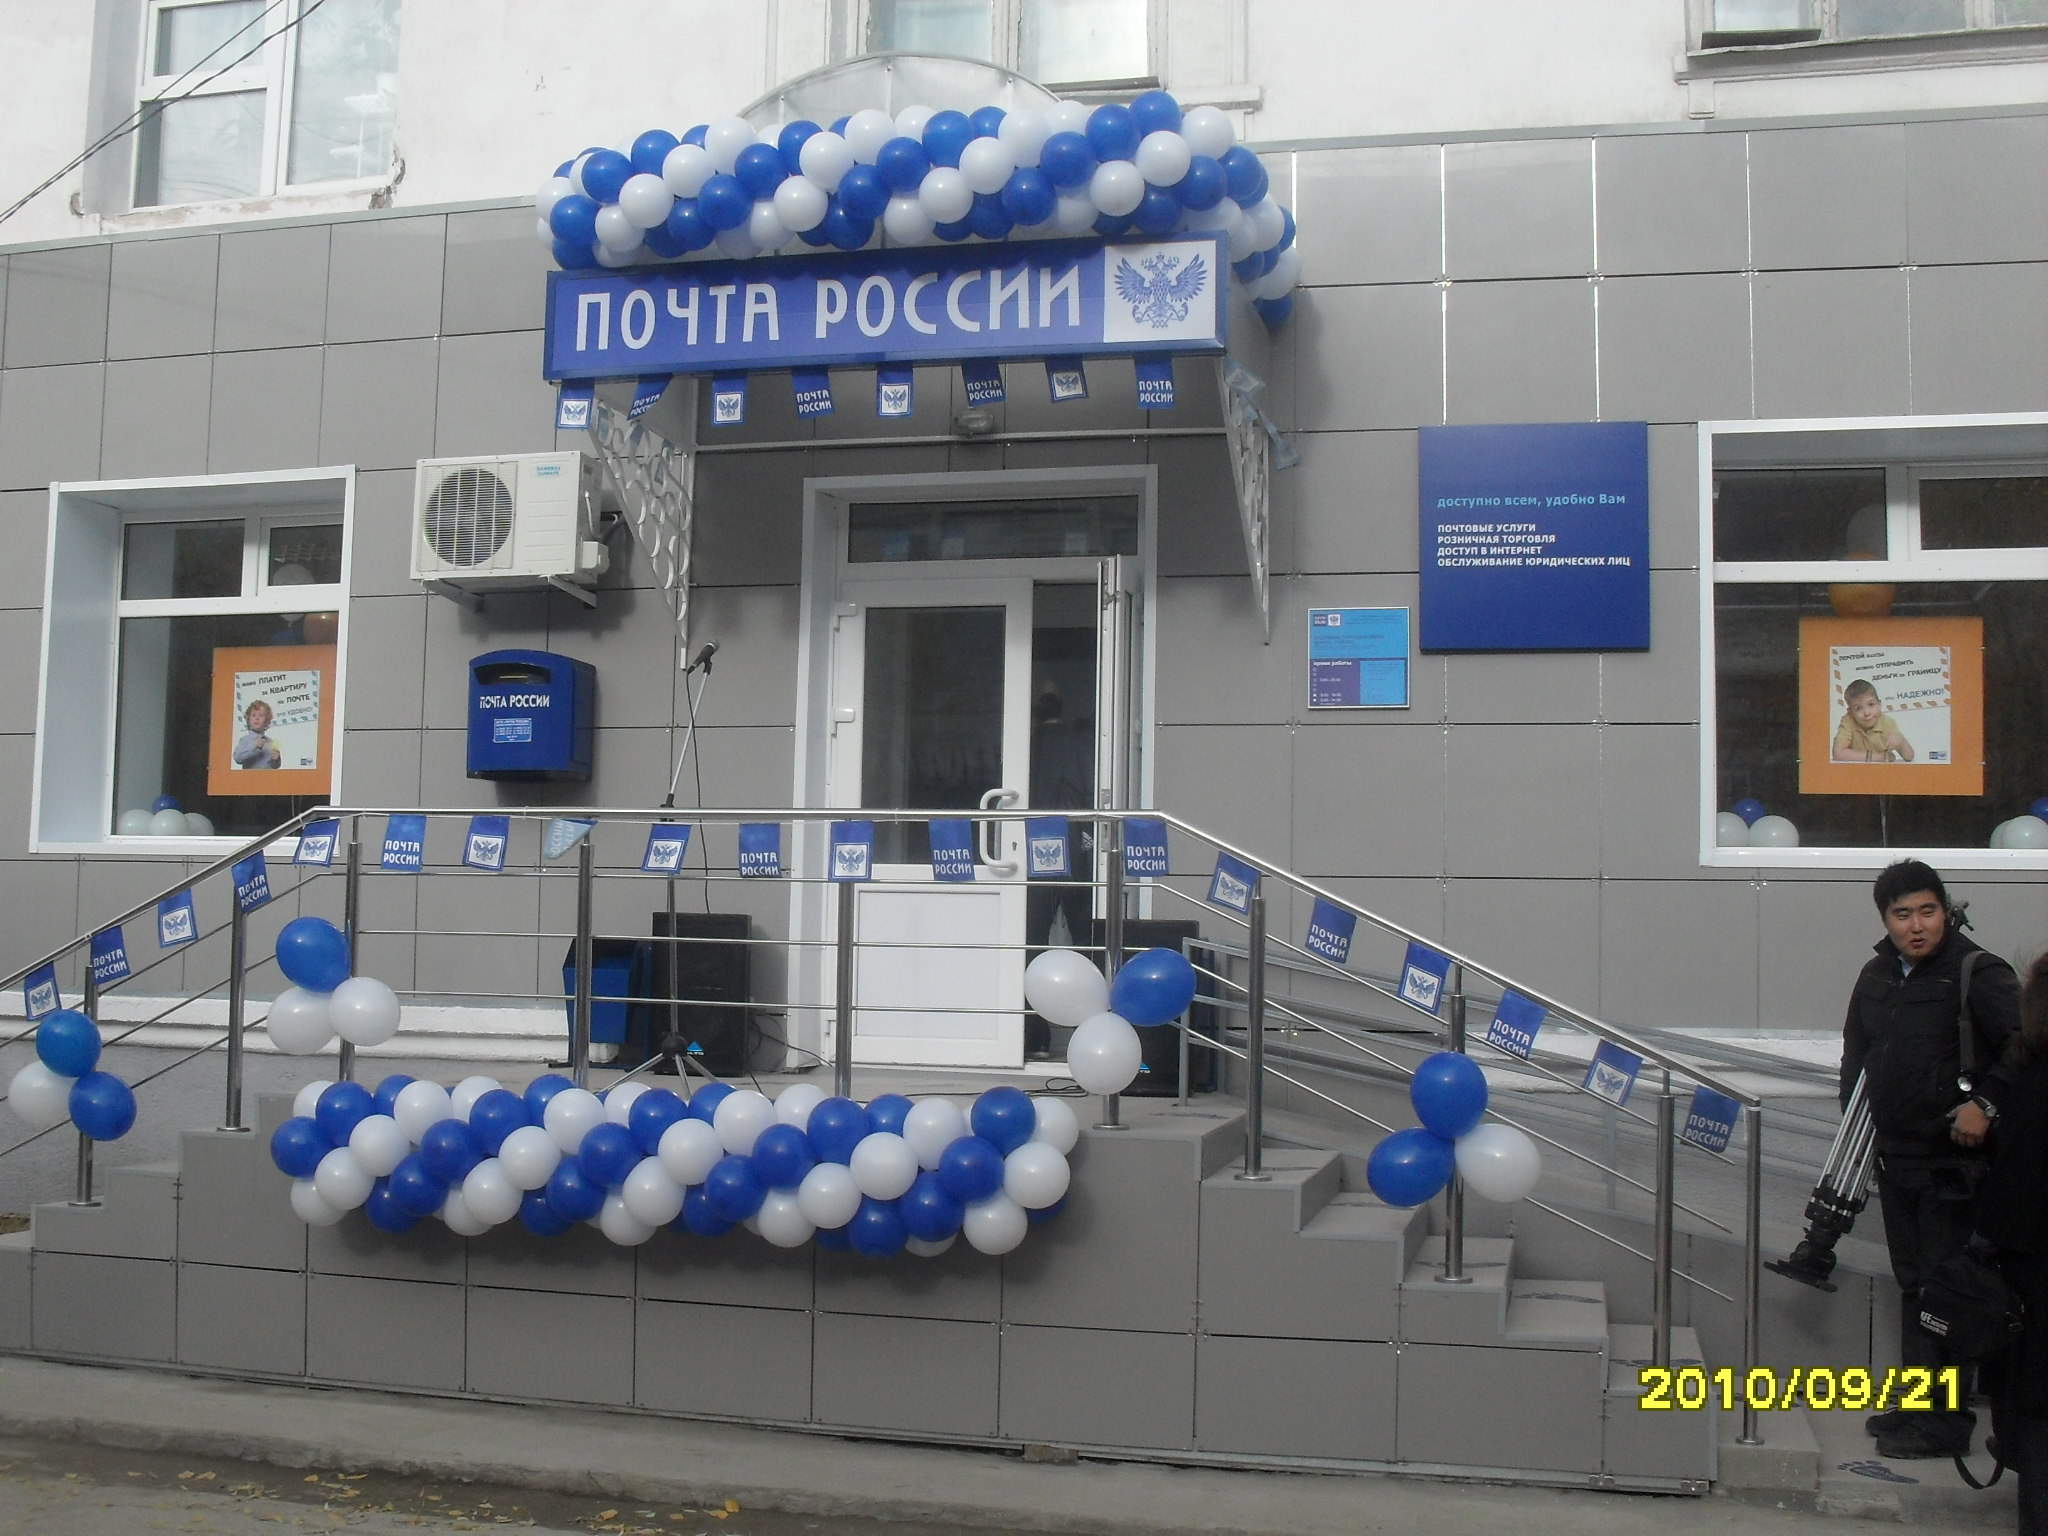 ВХОД, отделение почтовой связи 677007, Саха (Якутия) респ., Якутск